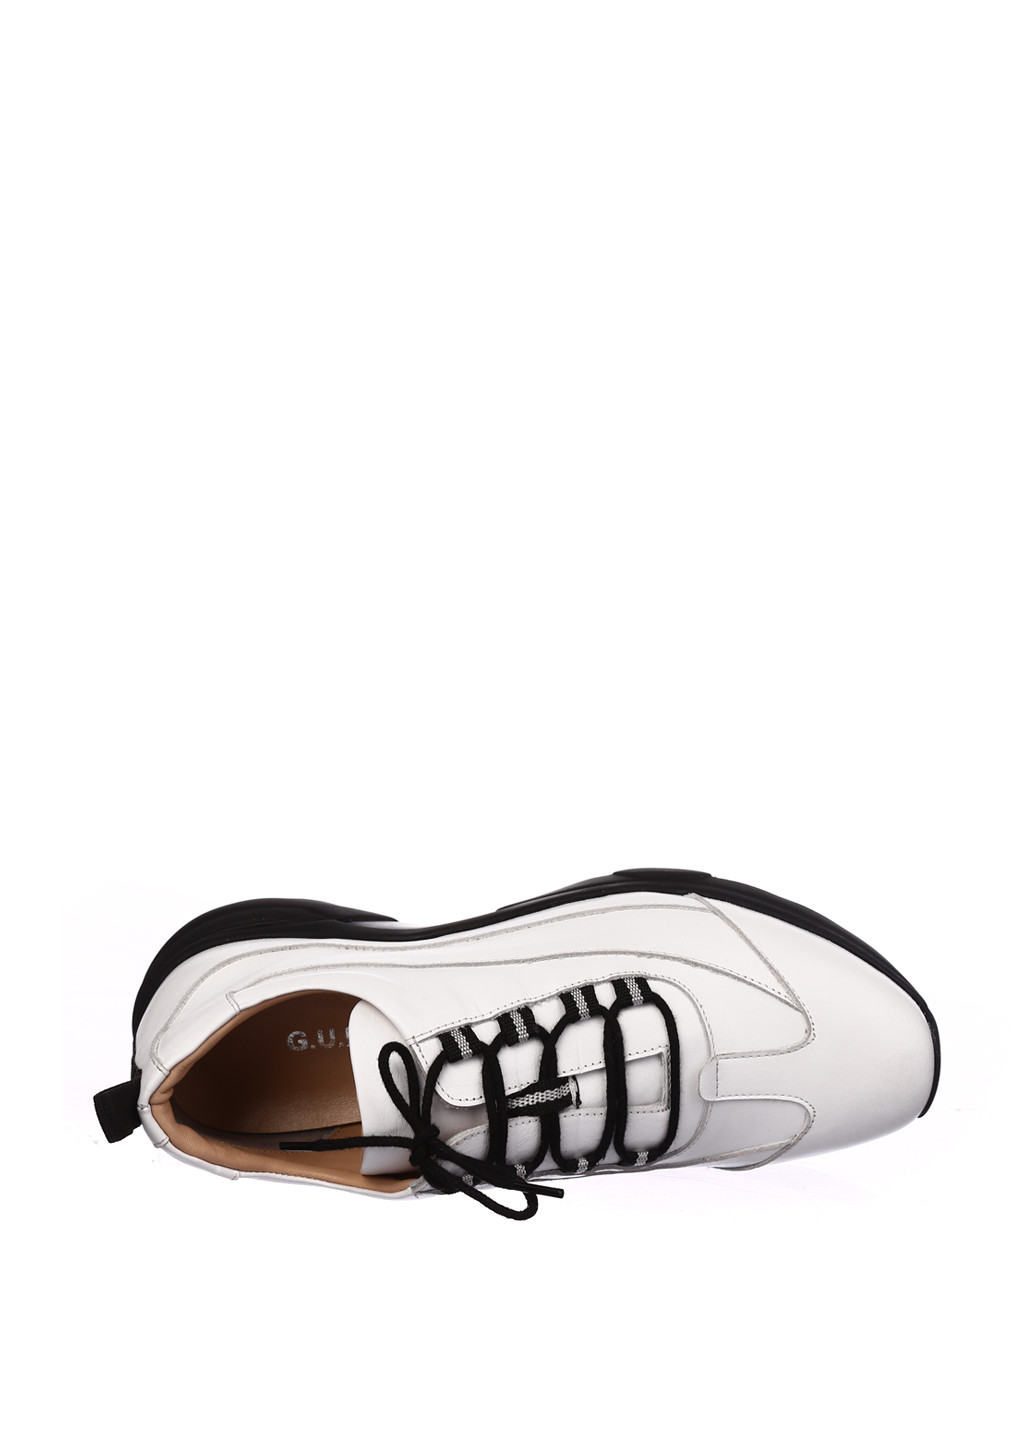 Белые демисезонные кроссовки Guero